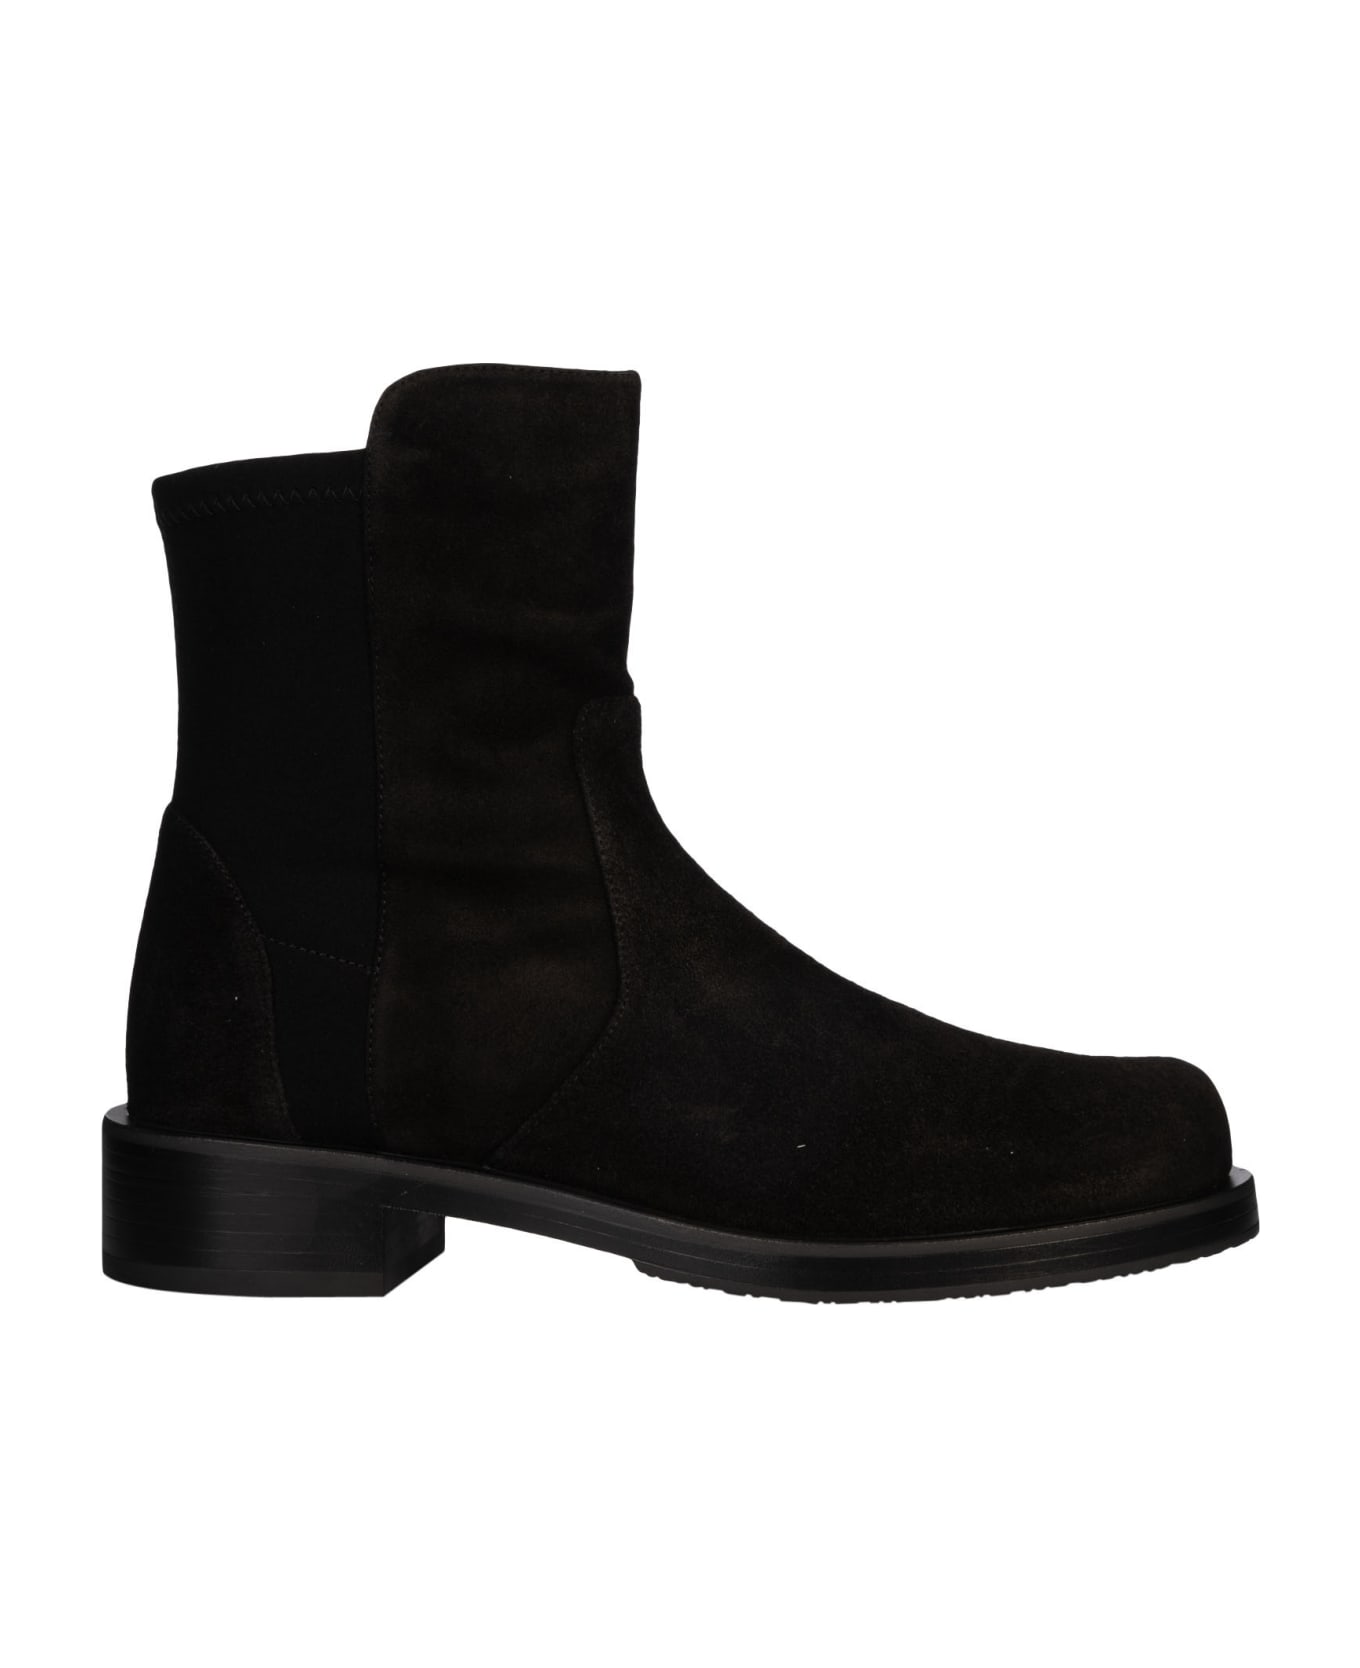 Stuart Weitzman Bold Boots - Black